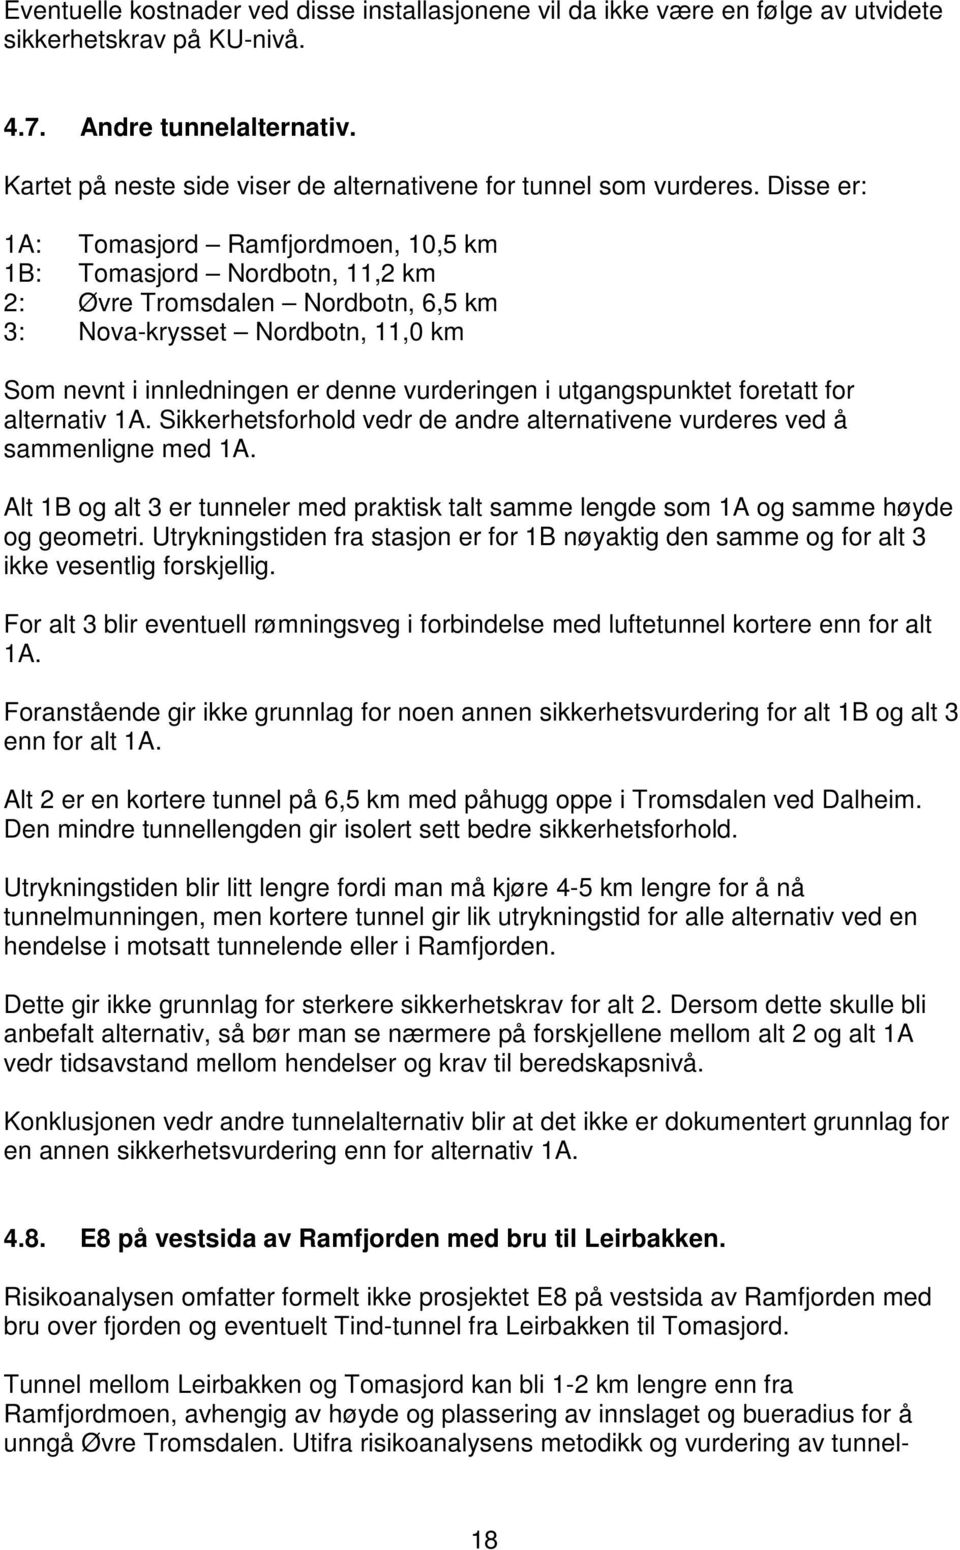 Disse er: 1A: Tomasjord Ramfjordmoen, 10,5 km 1B: Tomasjord Nordbotn, 11,2 km 2: Øvre Tromsdalen Nordbotn, 6,5 km 3: Nova-krysset Nordbotn, 11,0 km Som nevnt i innledningen er denne vurderingen i